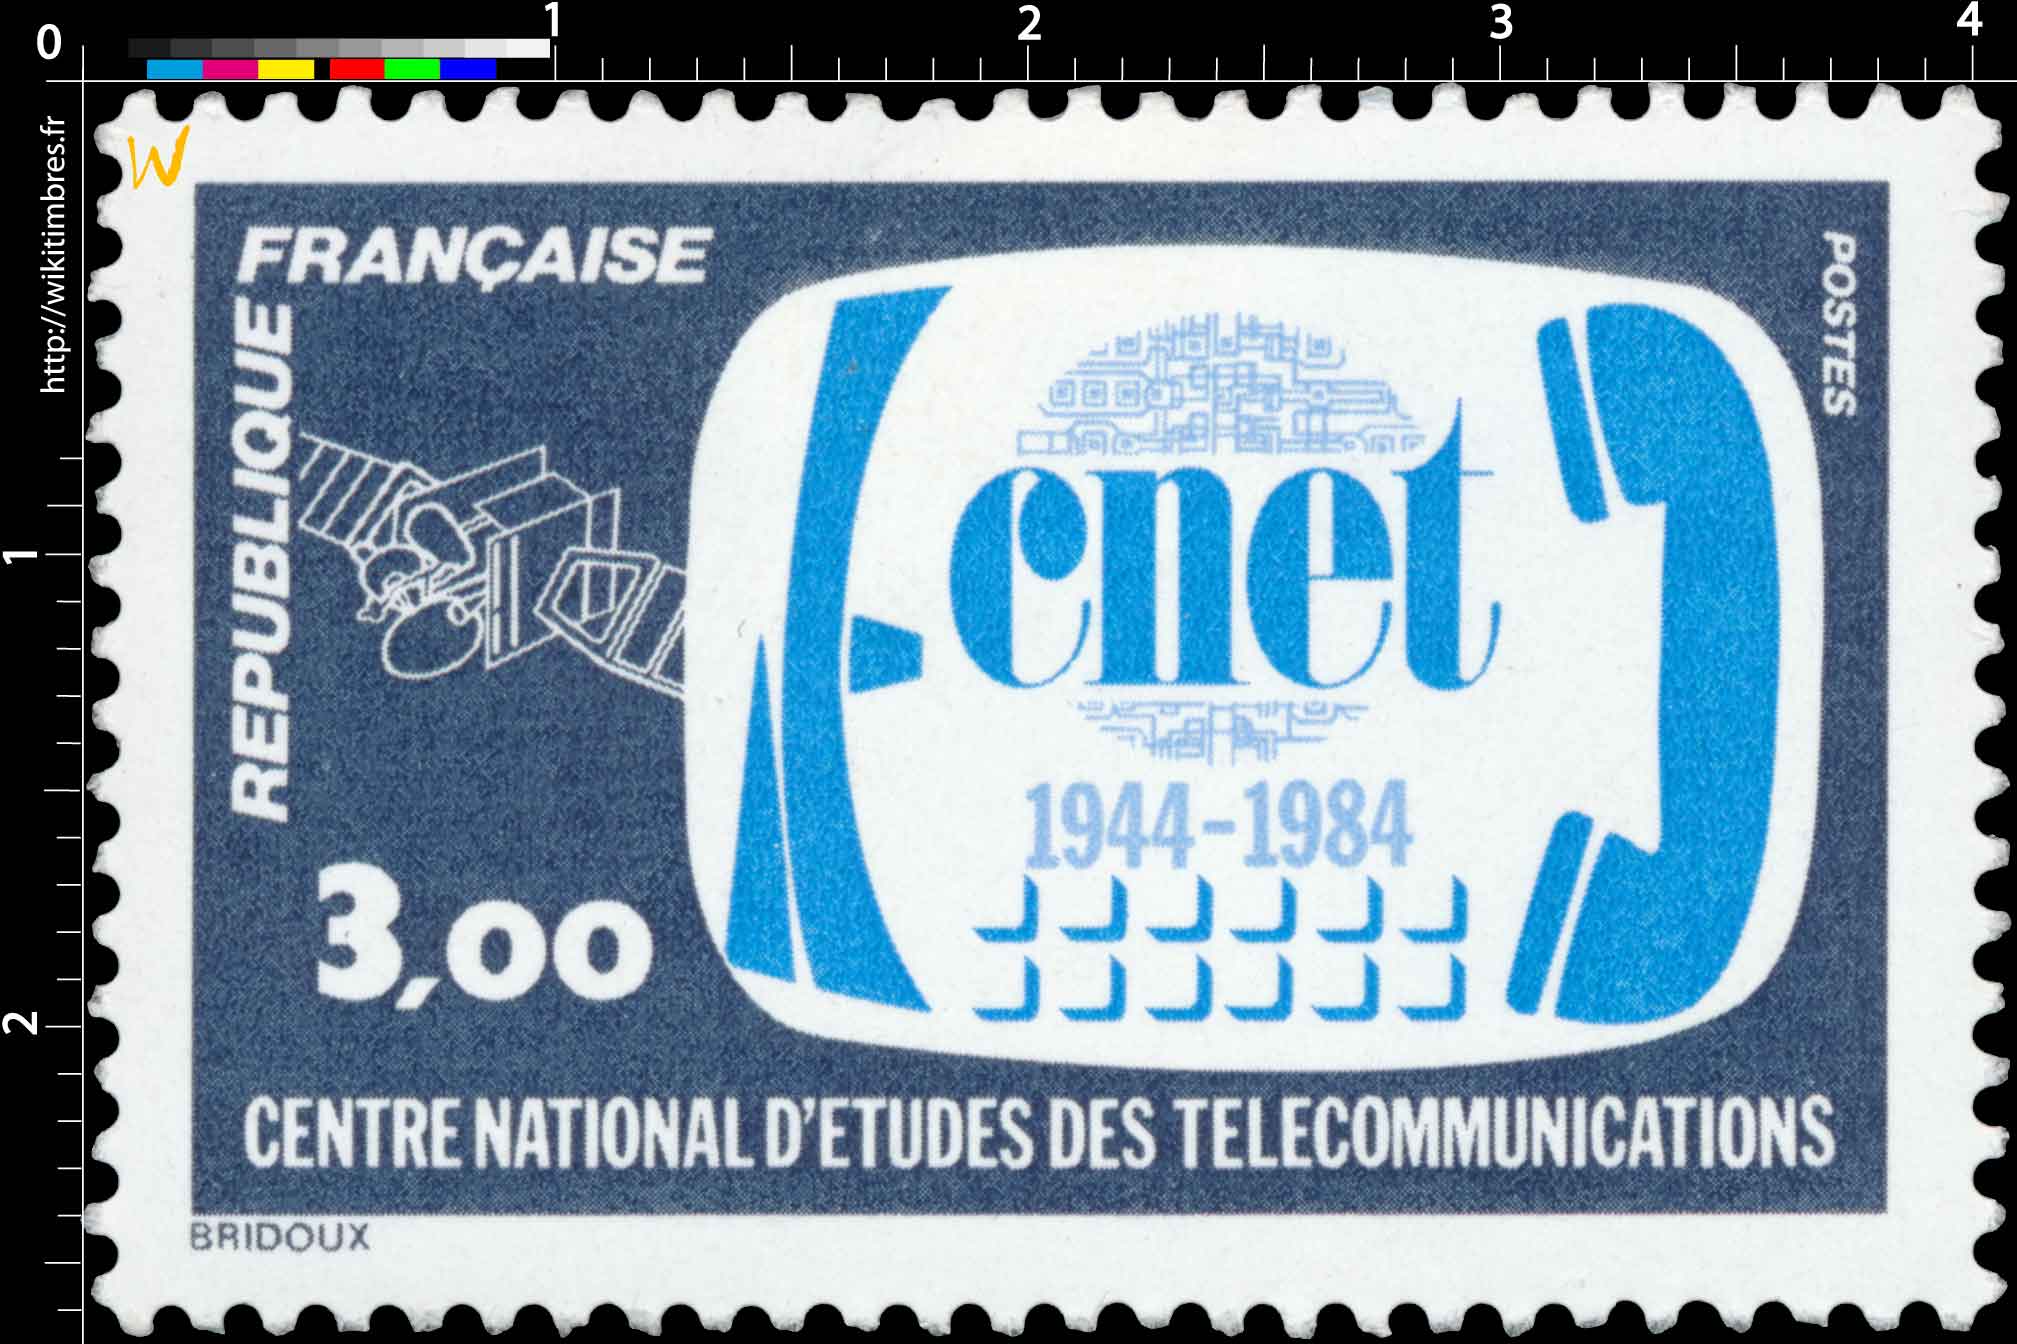 1984 cnet 1944-1984 CENTRE NATIONAL D'ÉTUDES DES TÉLÉCOMMUNICATIONS